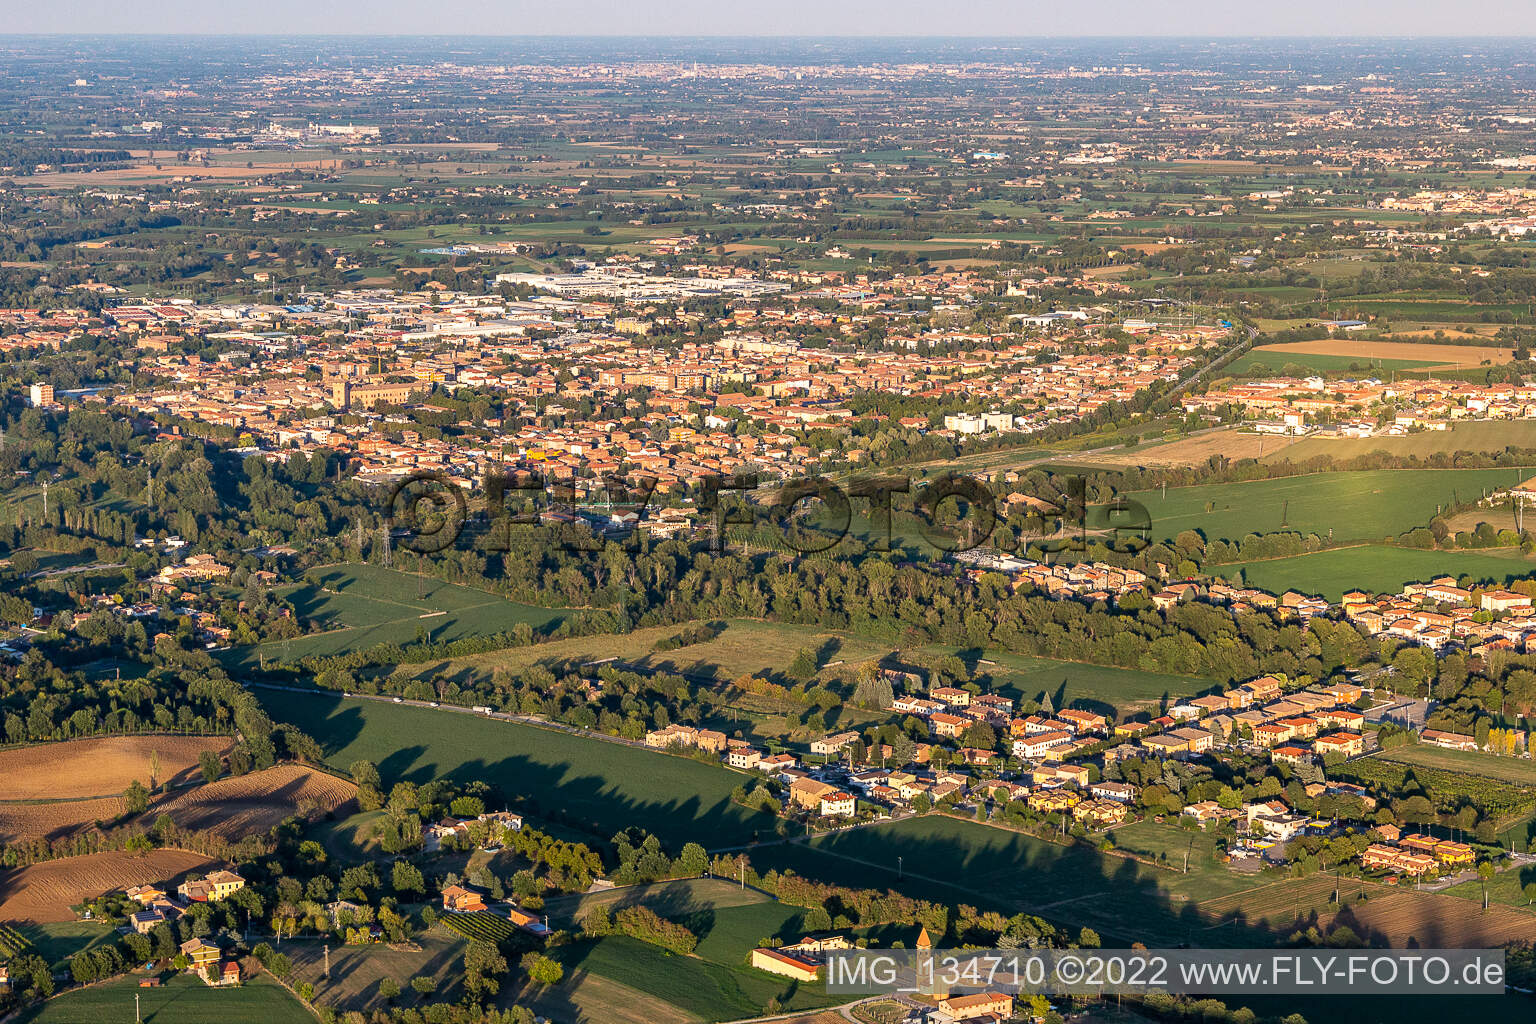 Vue aérienne de Scandiano dans le département Reggio Emilia, Italie